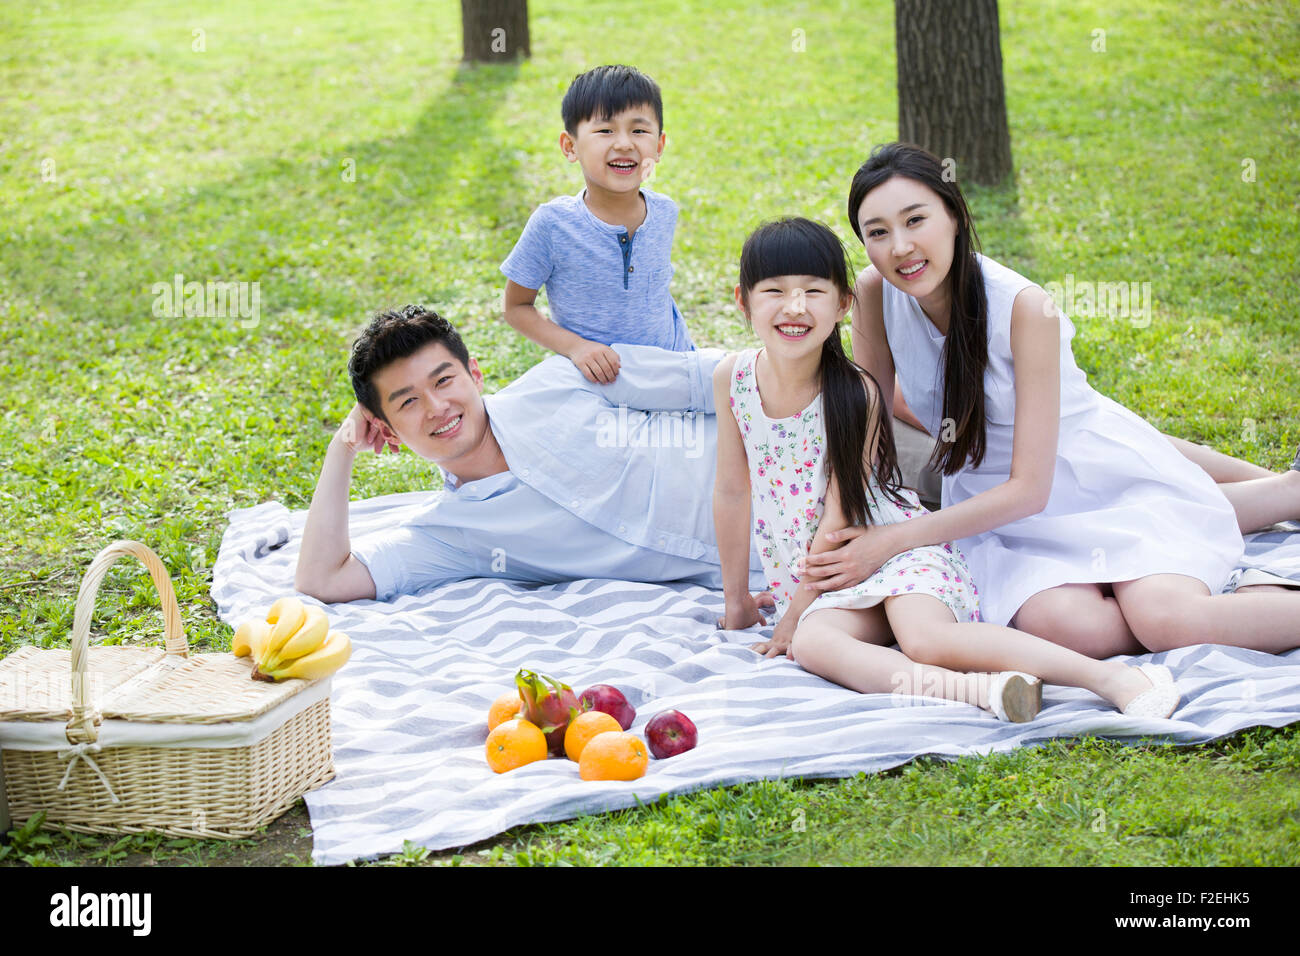 Happy Family having picnic sur l'herbe Banque D'Images